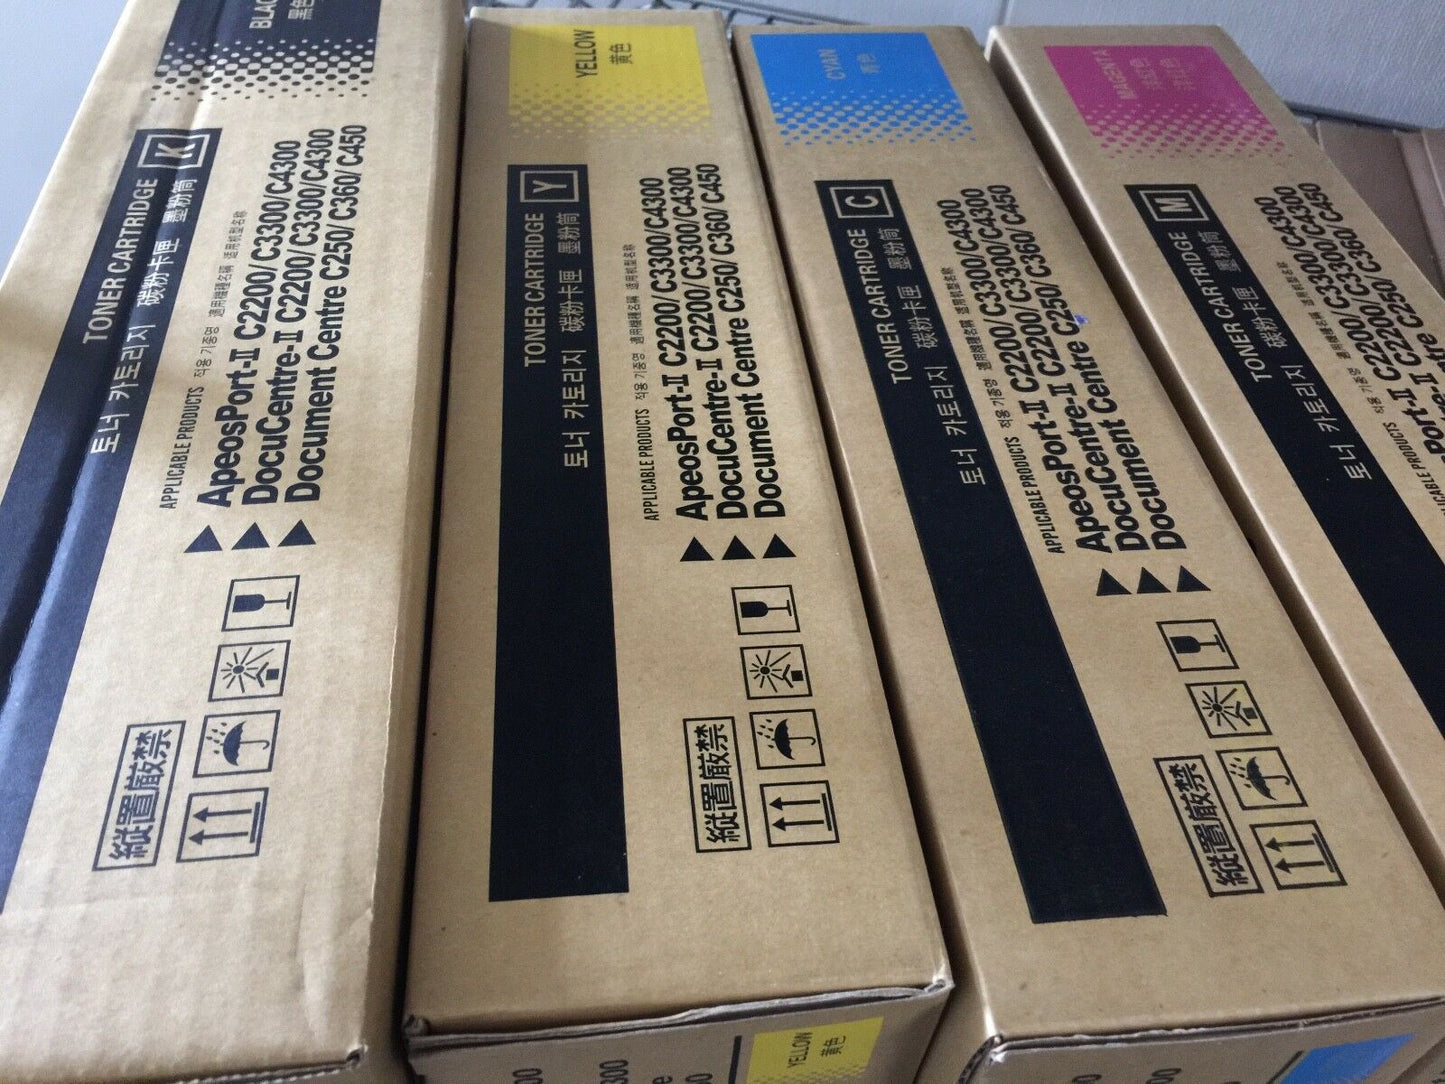 4 Pack for Xerox DocumenCentre C250 C360 C450 Toner Cartridges CT200539 NON-OEM